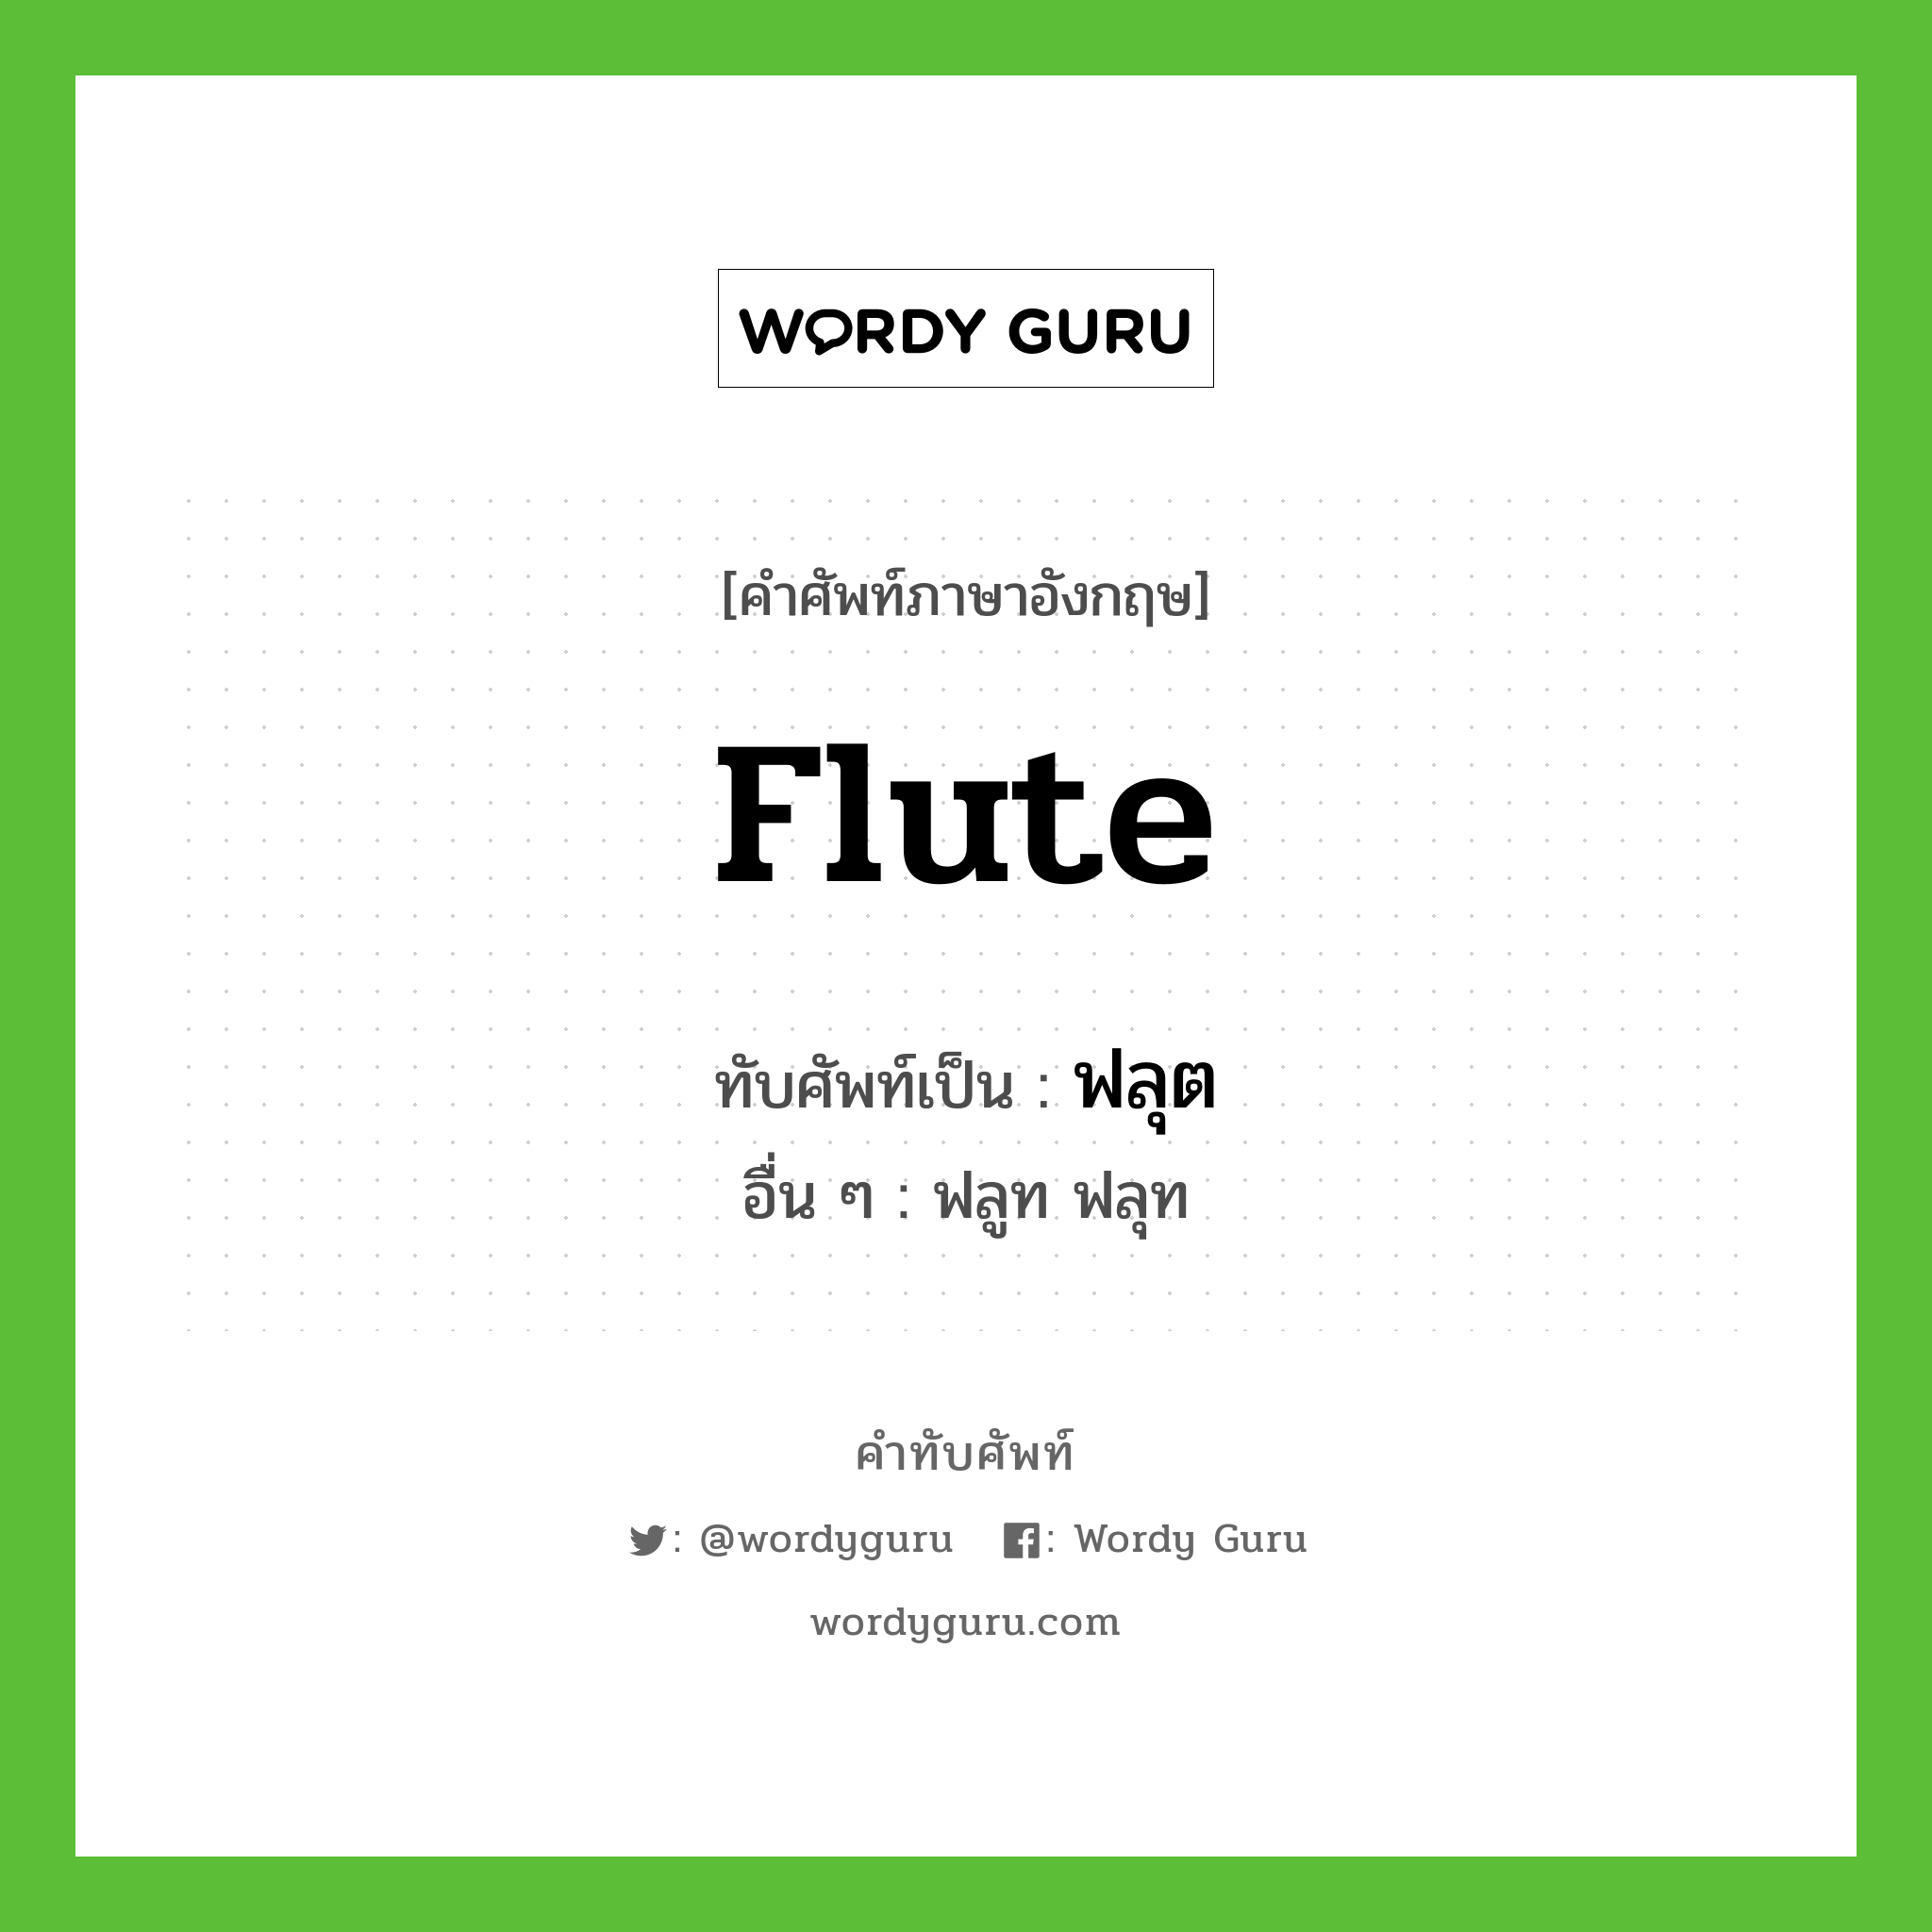 flute เขียนเป็นคำไทยว่าอะไร?, คำศัพท์ภาษาอังกฤษ flute ทับศัพท์เป็น ฟลุต อื่น ๆ ฟลูท ฟลุท